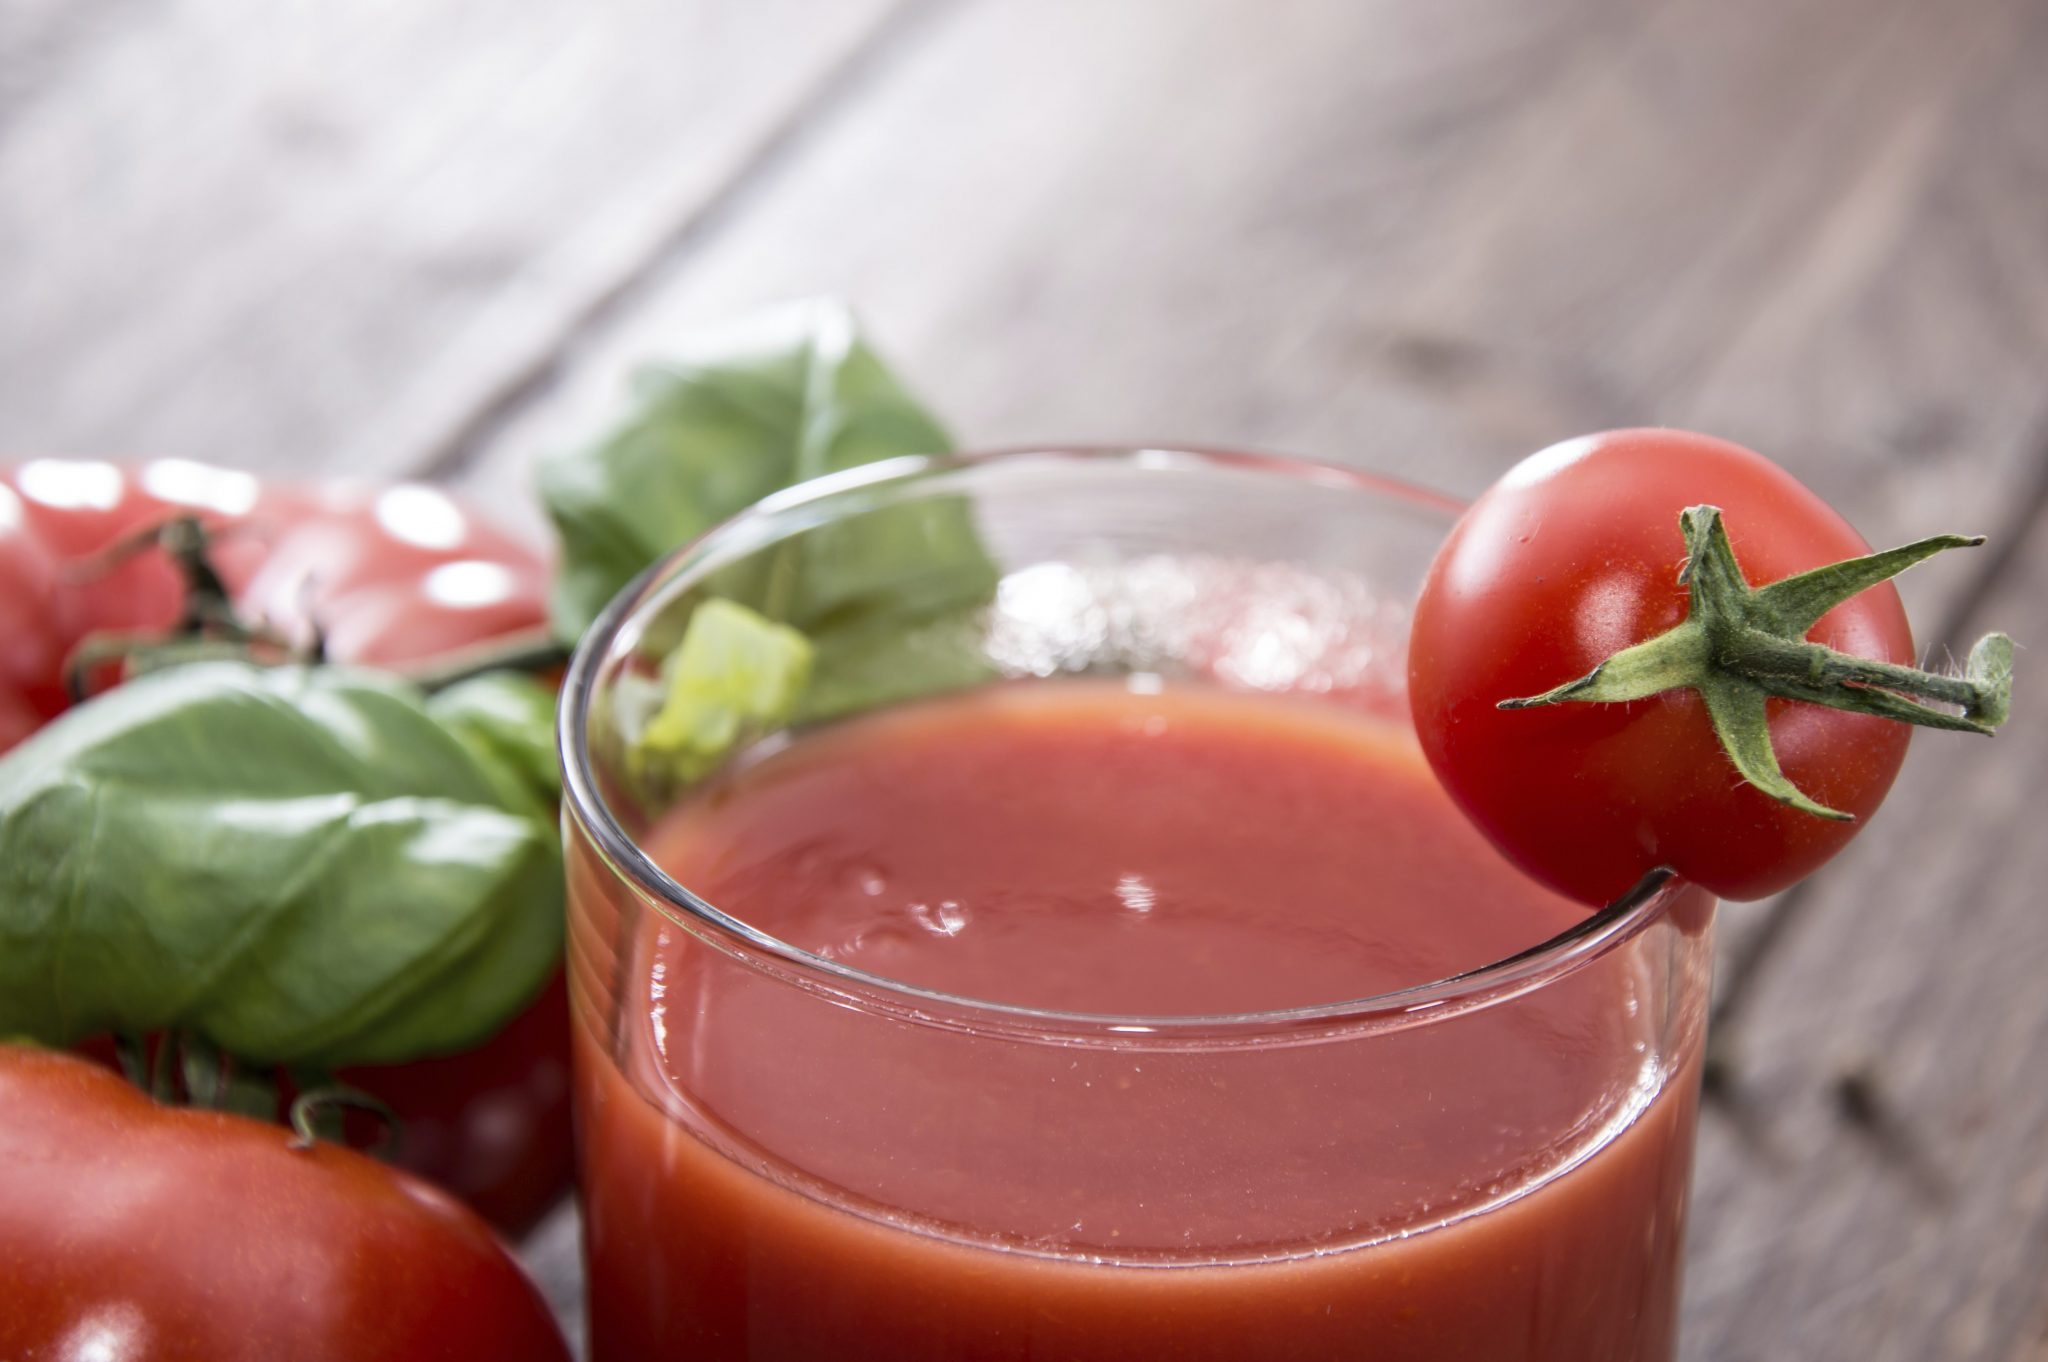 Tomato Juice benefits